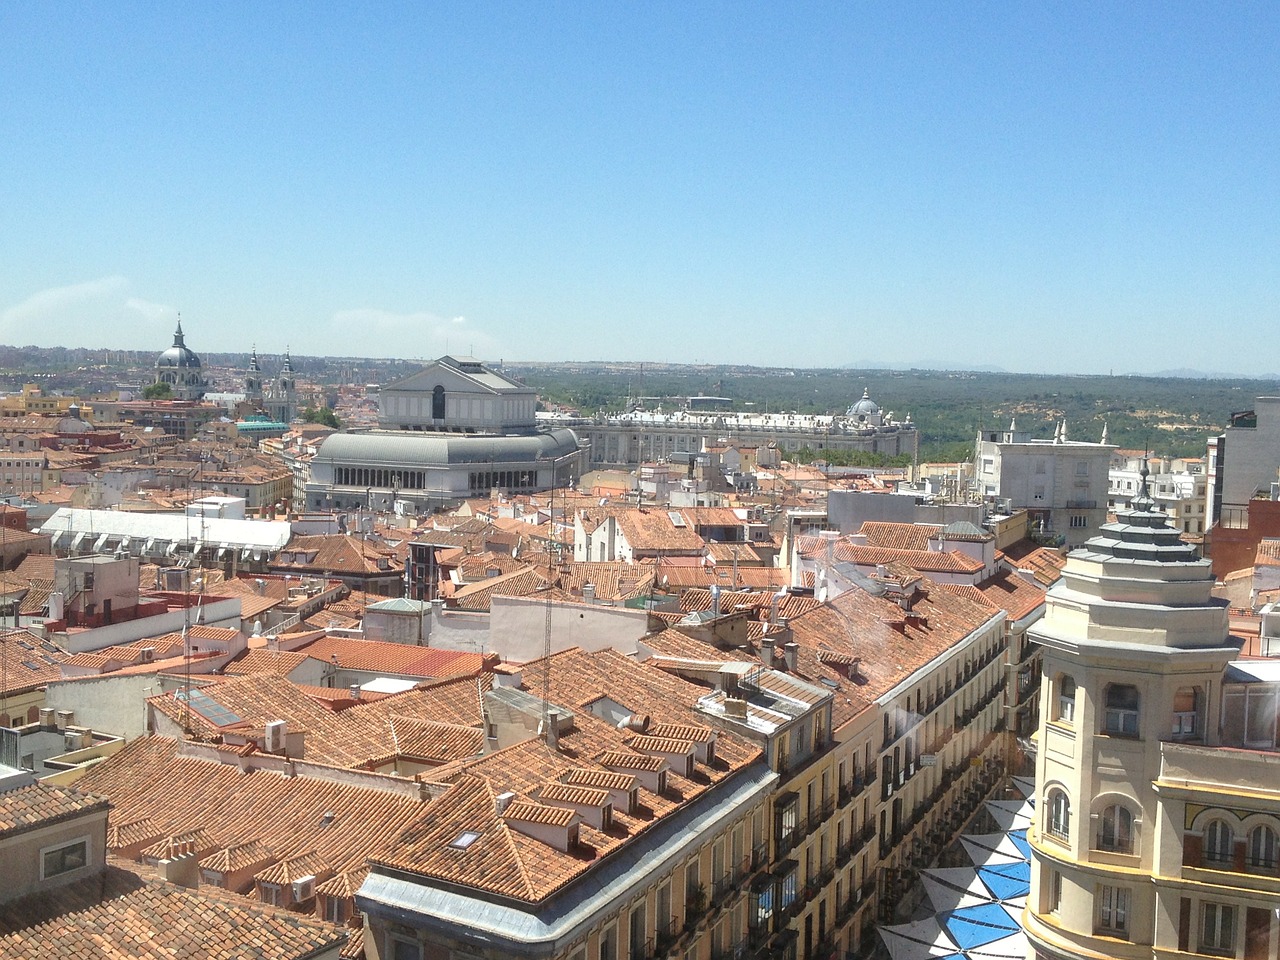 Rūmai, Karališkasis, Apie, Madride, Karališkasis Rūmai, Architektūra, Ispanija, Miestai, Miesto, Karališkasis Teatras